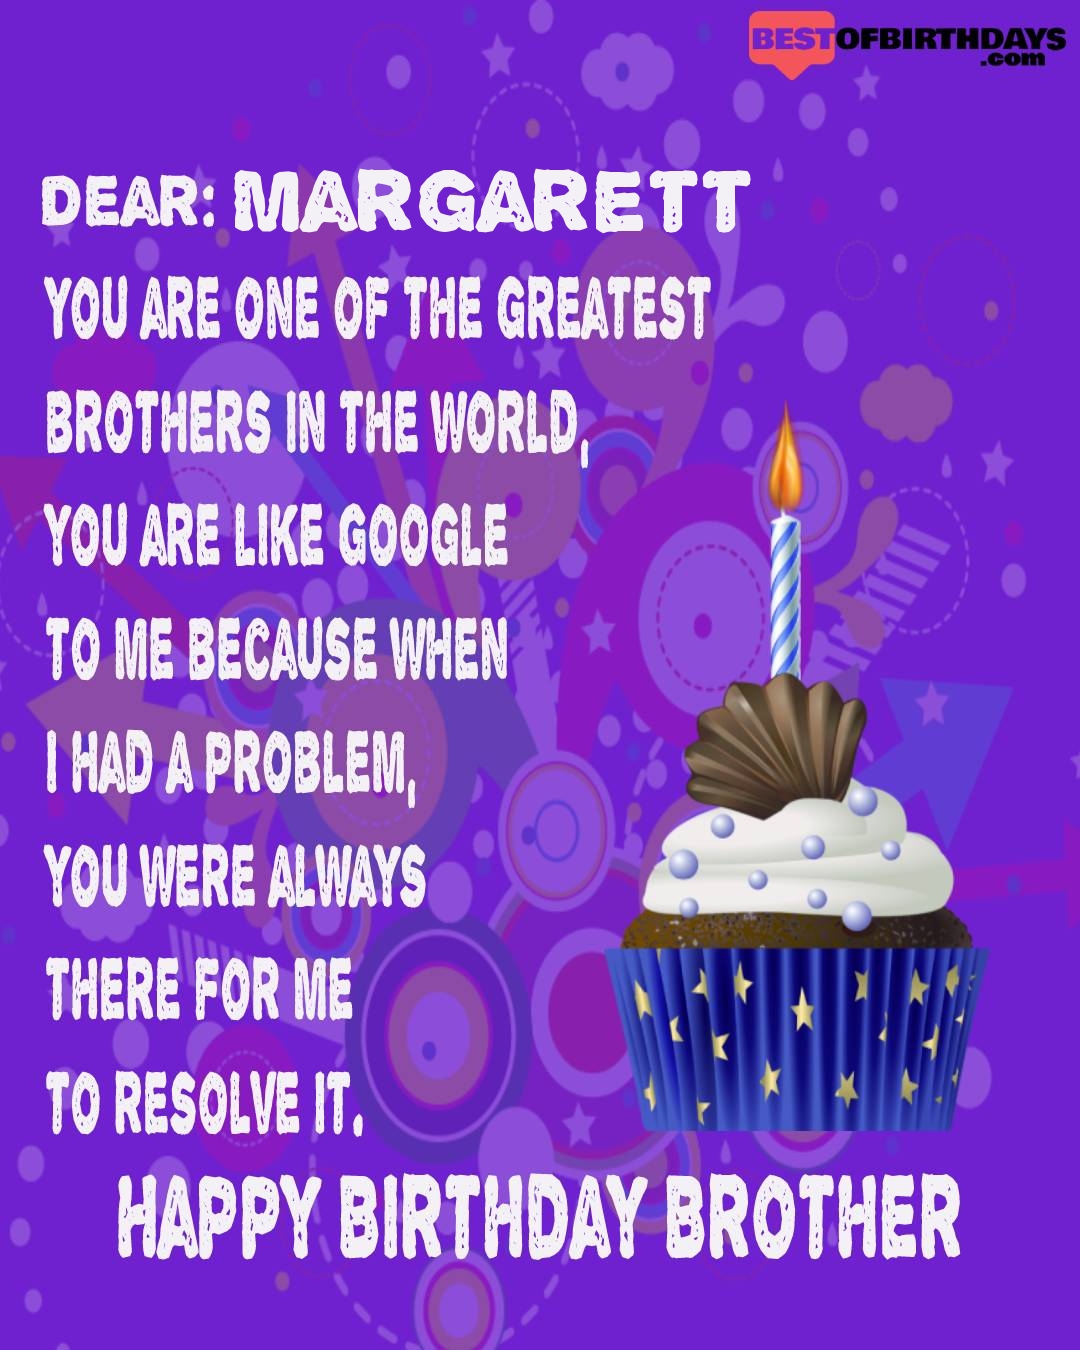 Happy birthday margarett bhai brother bro